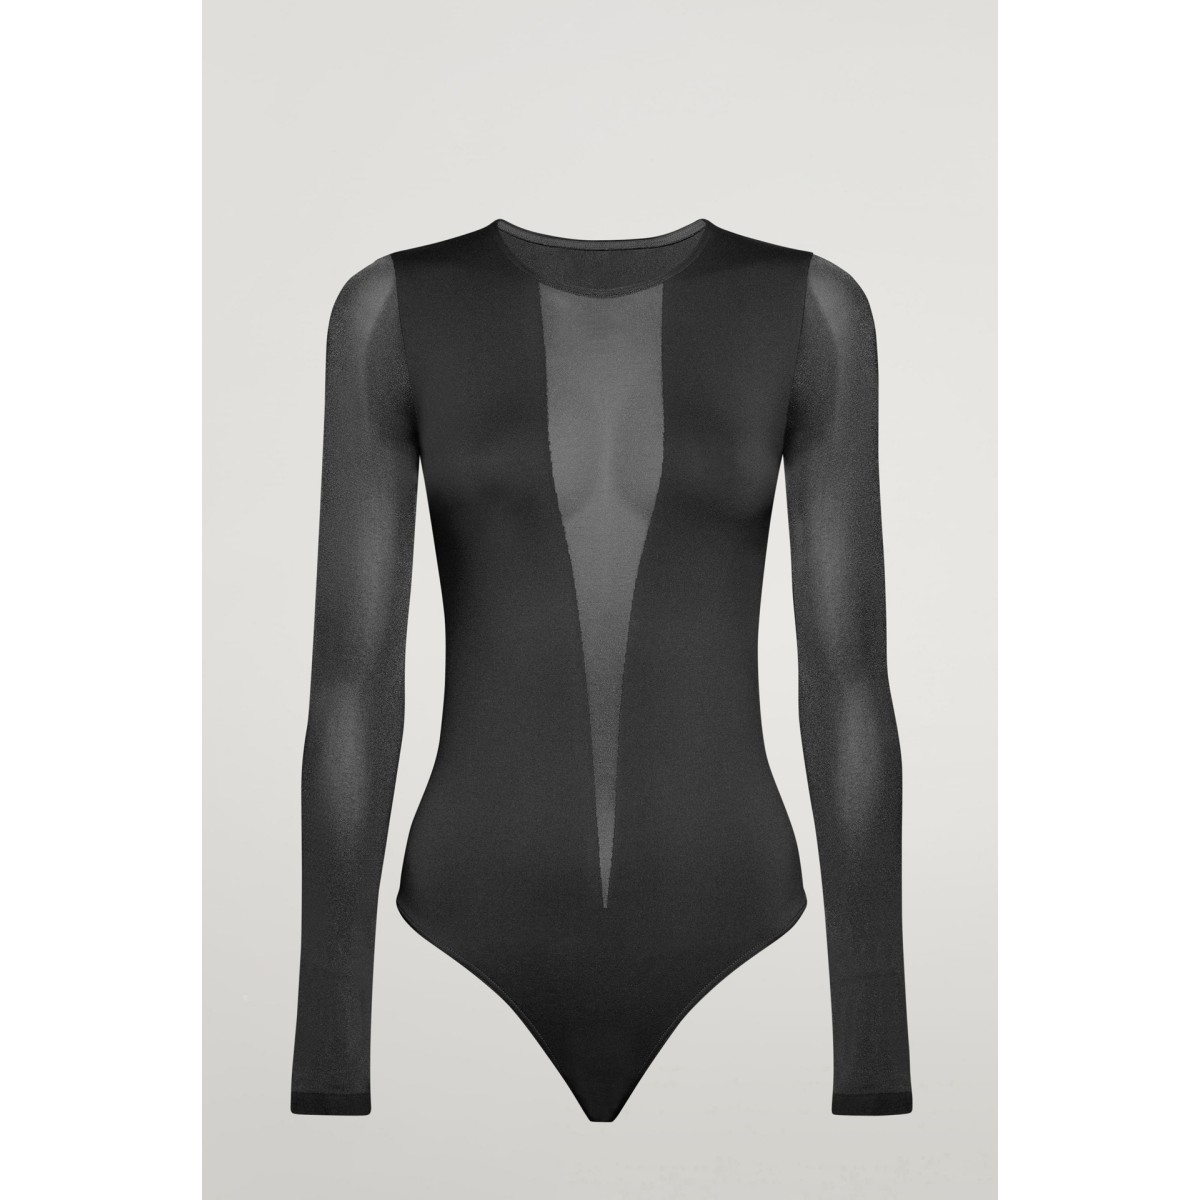 Venus Black and White Sheer Bodysuit - ShopperBoard